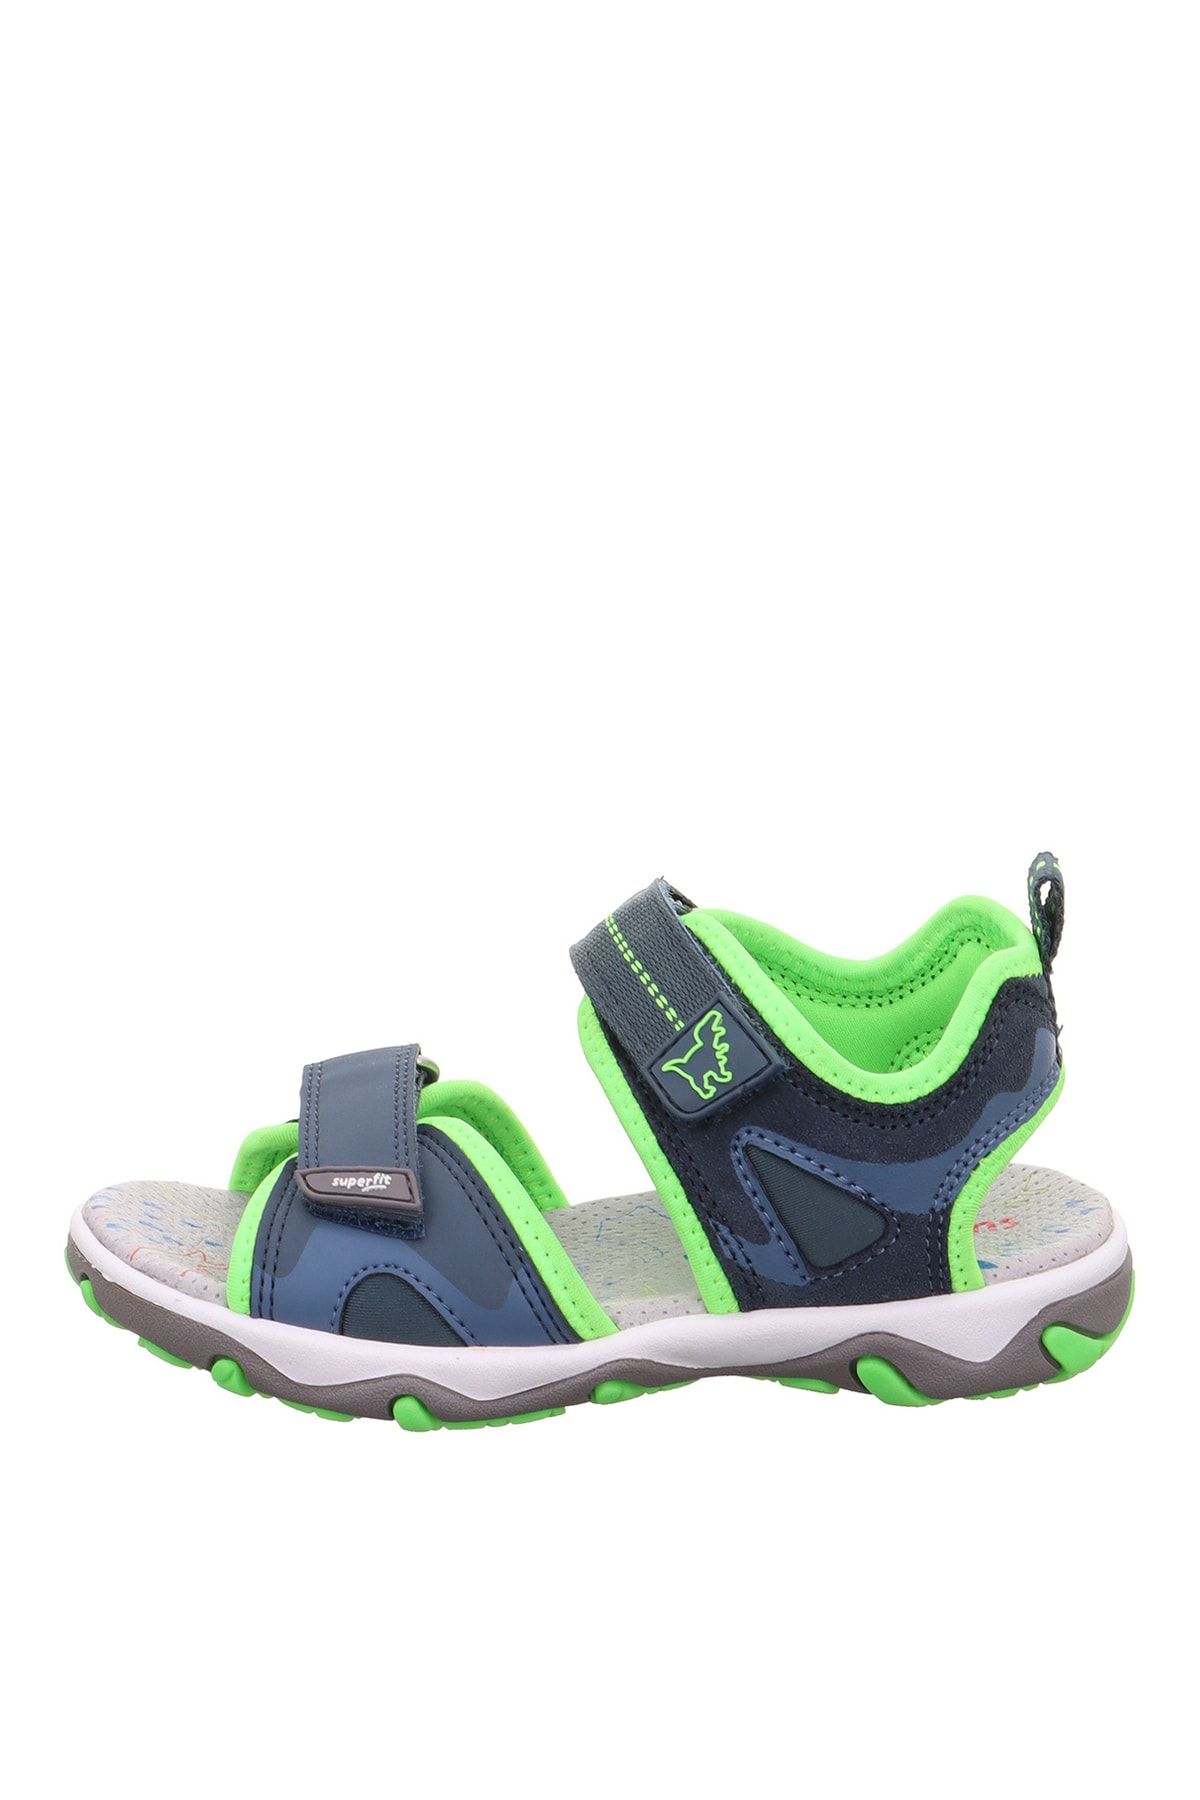 Superfit Mavi - Yeşil Erkek Çocuk Sandalet MIKE 3.0 1-009470-8030-1